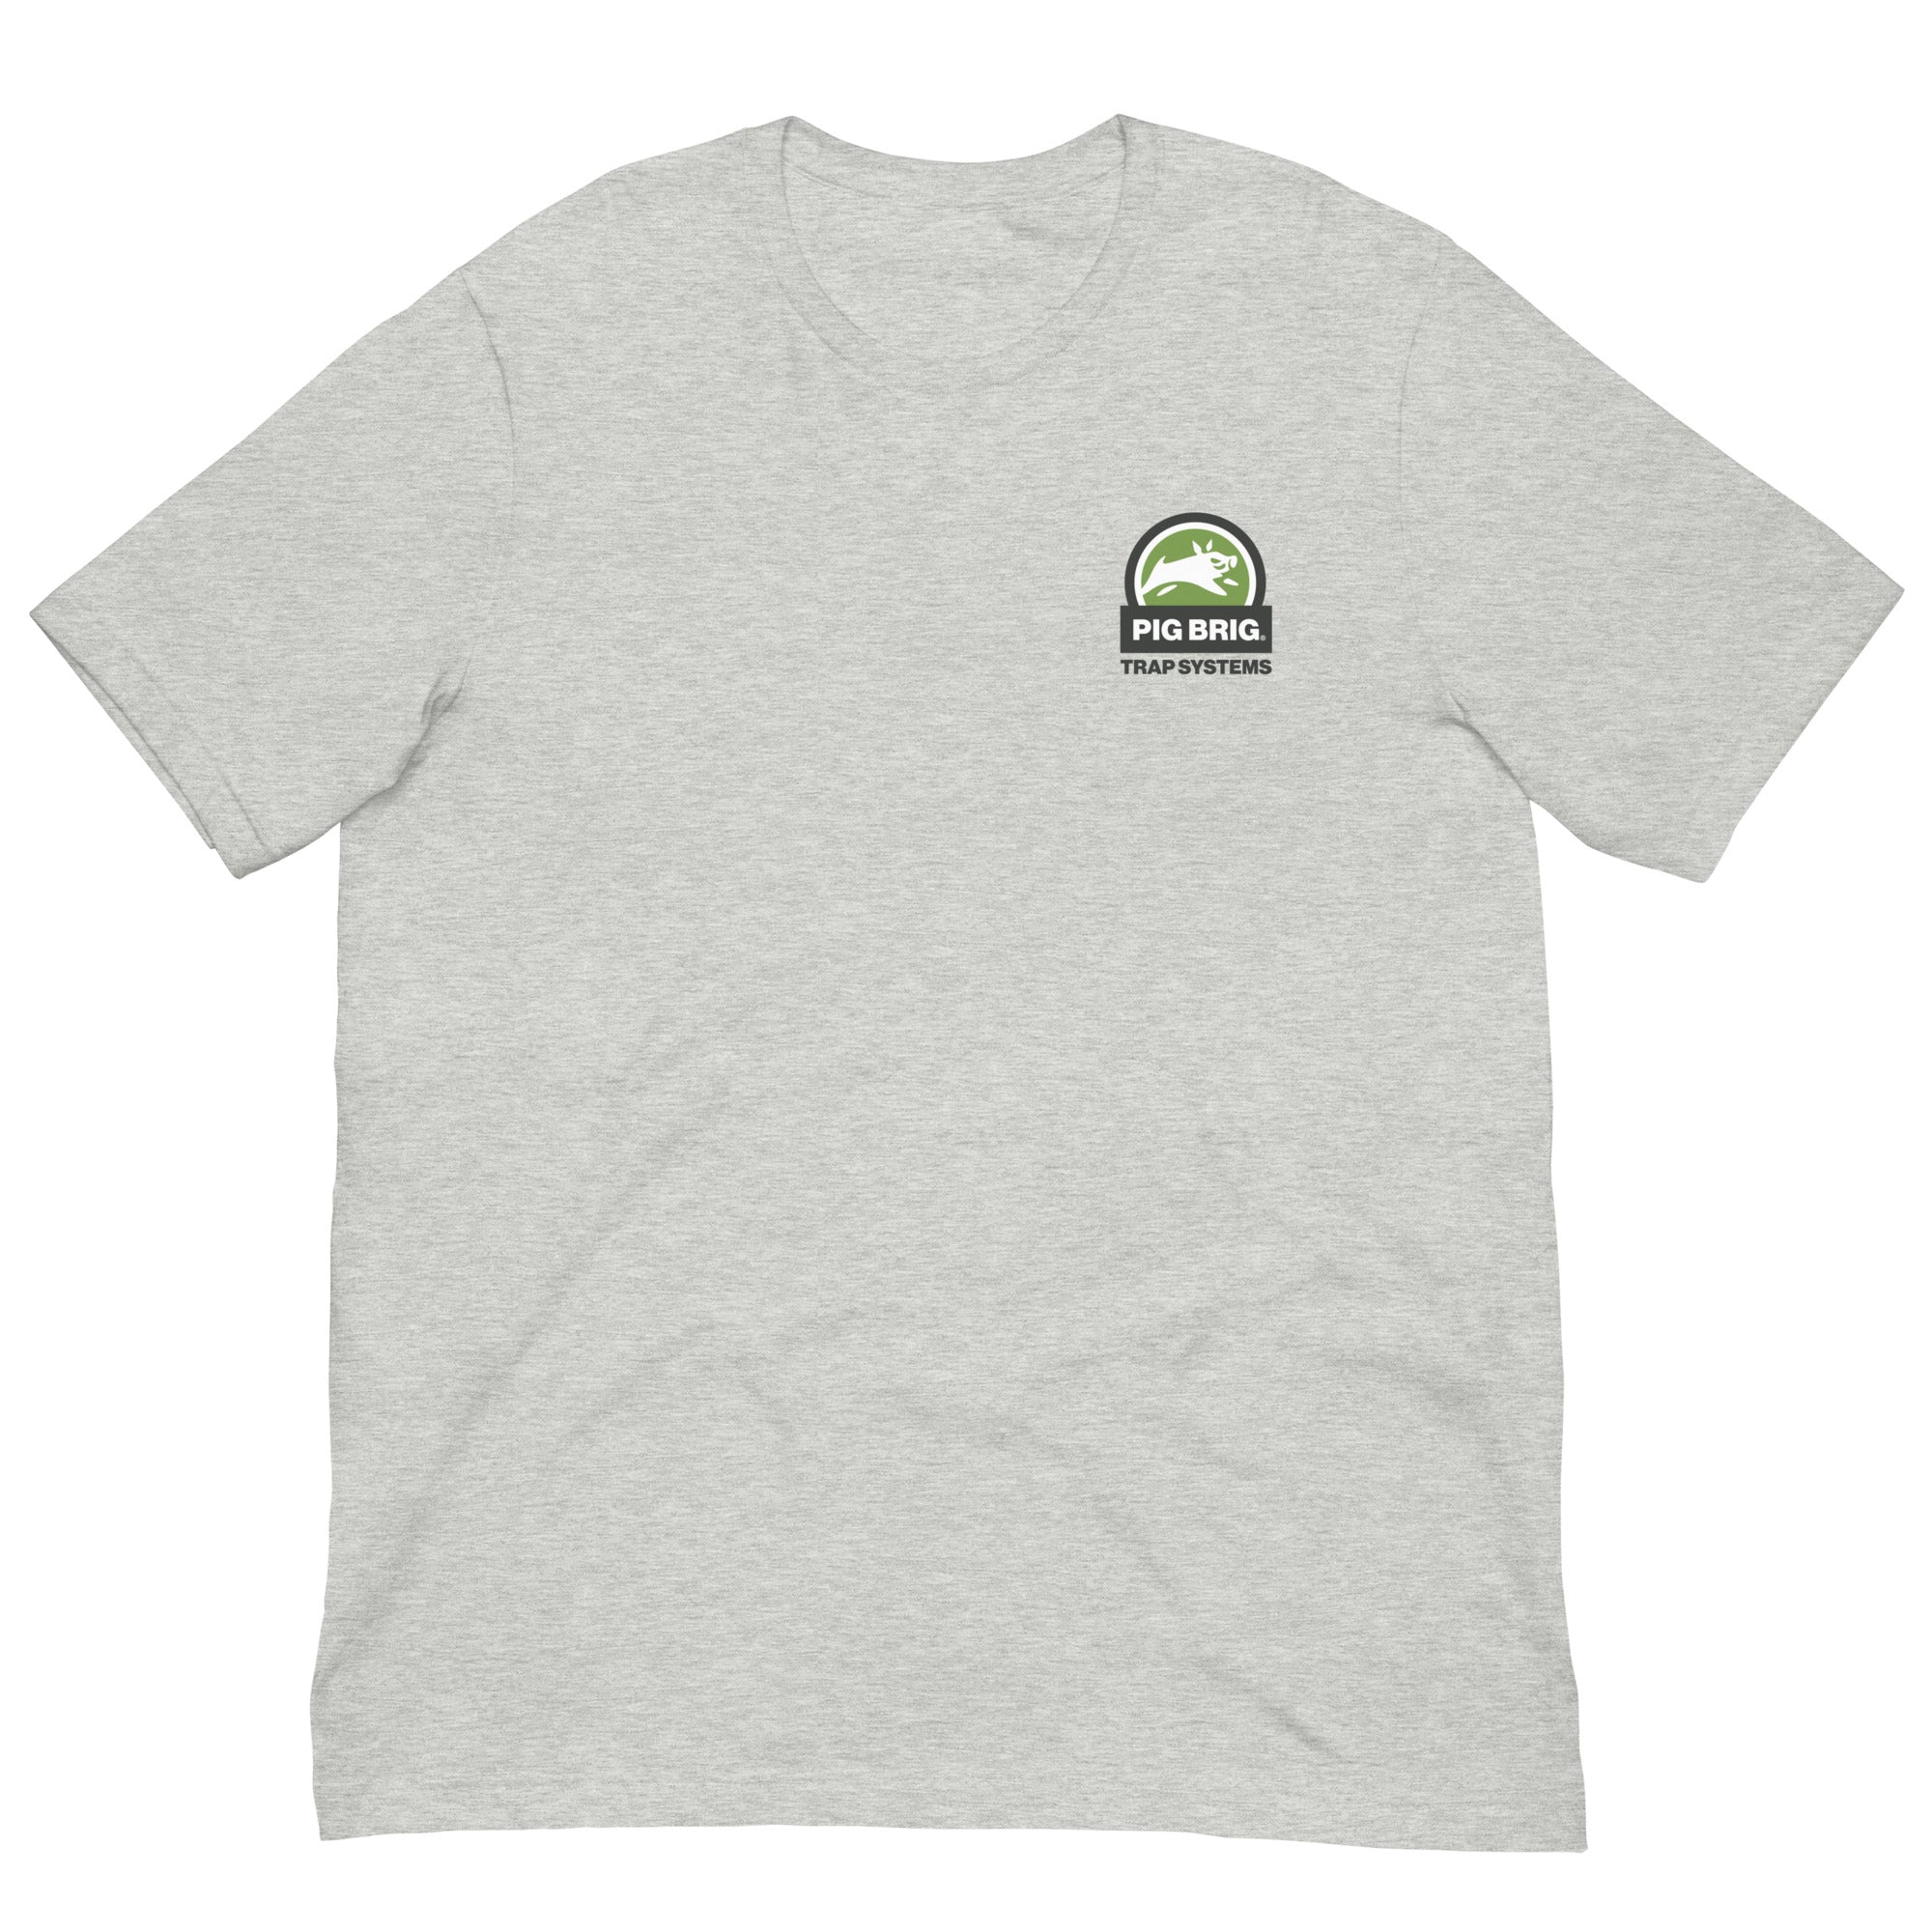 Got Pigs? Get a Brig. - Short-Sleeve Unisex T-Shirt